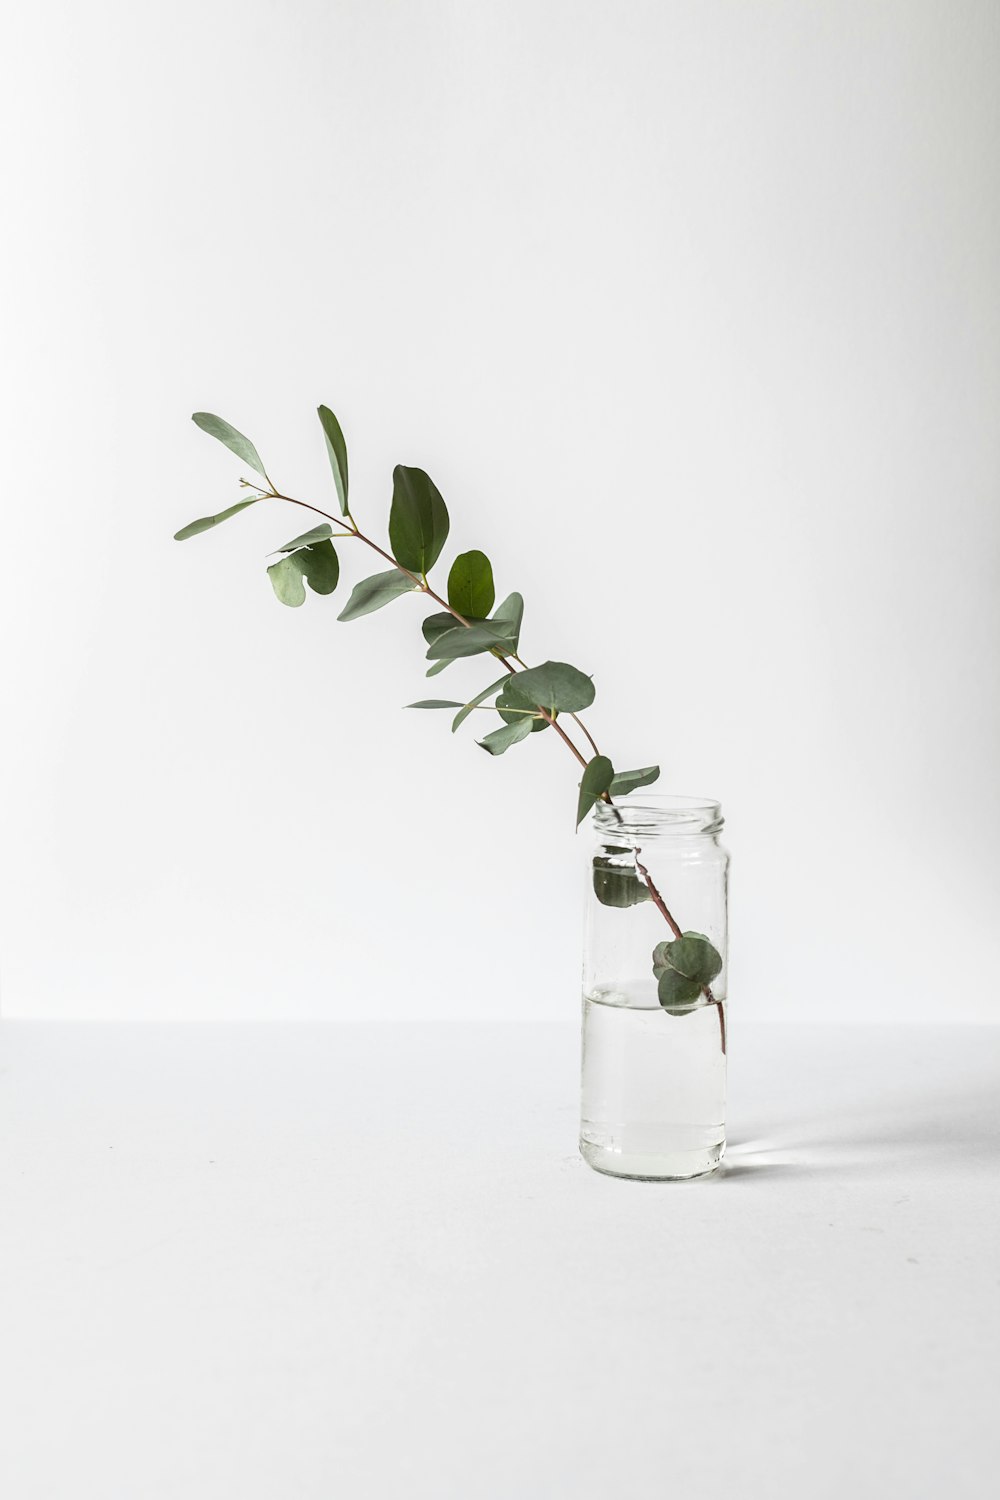 pianta a foglia verde in barattolo di vetro